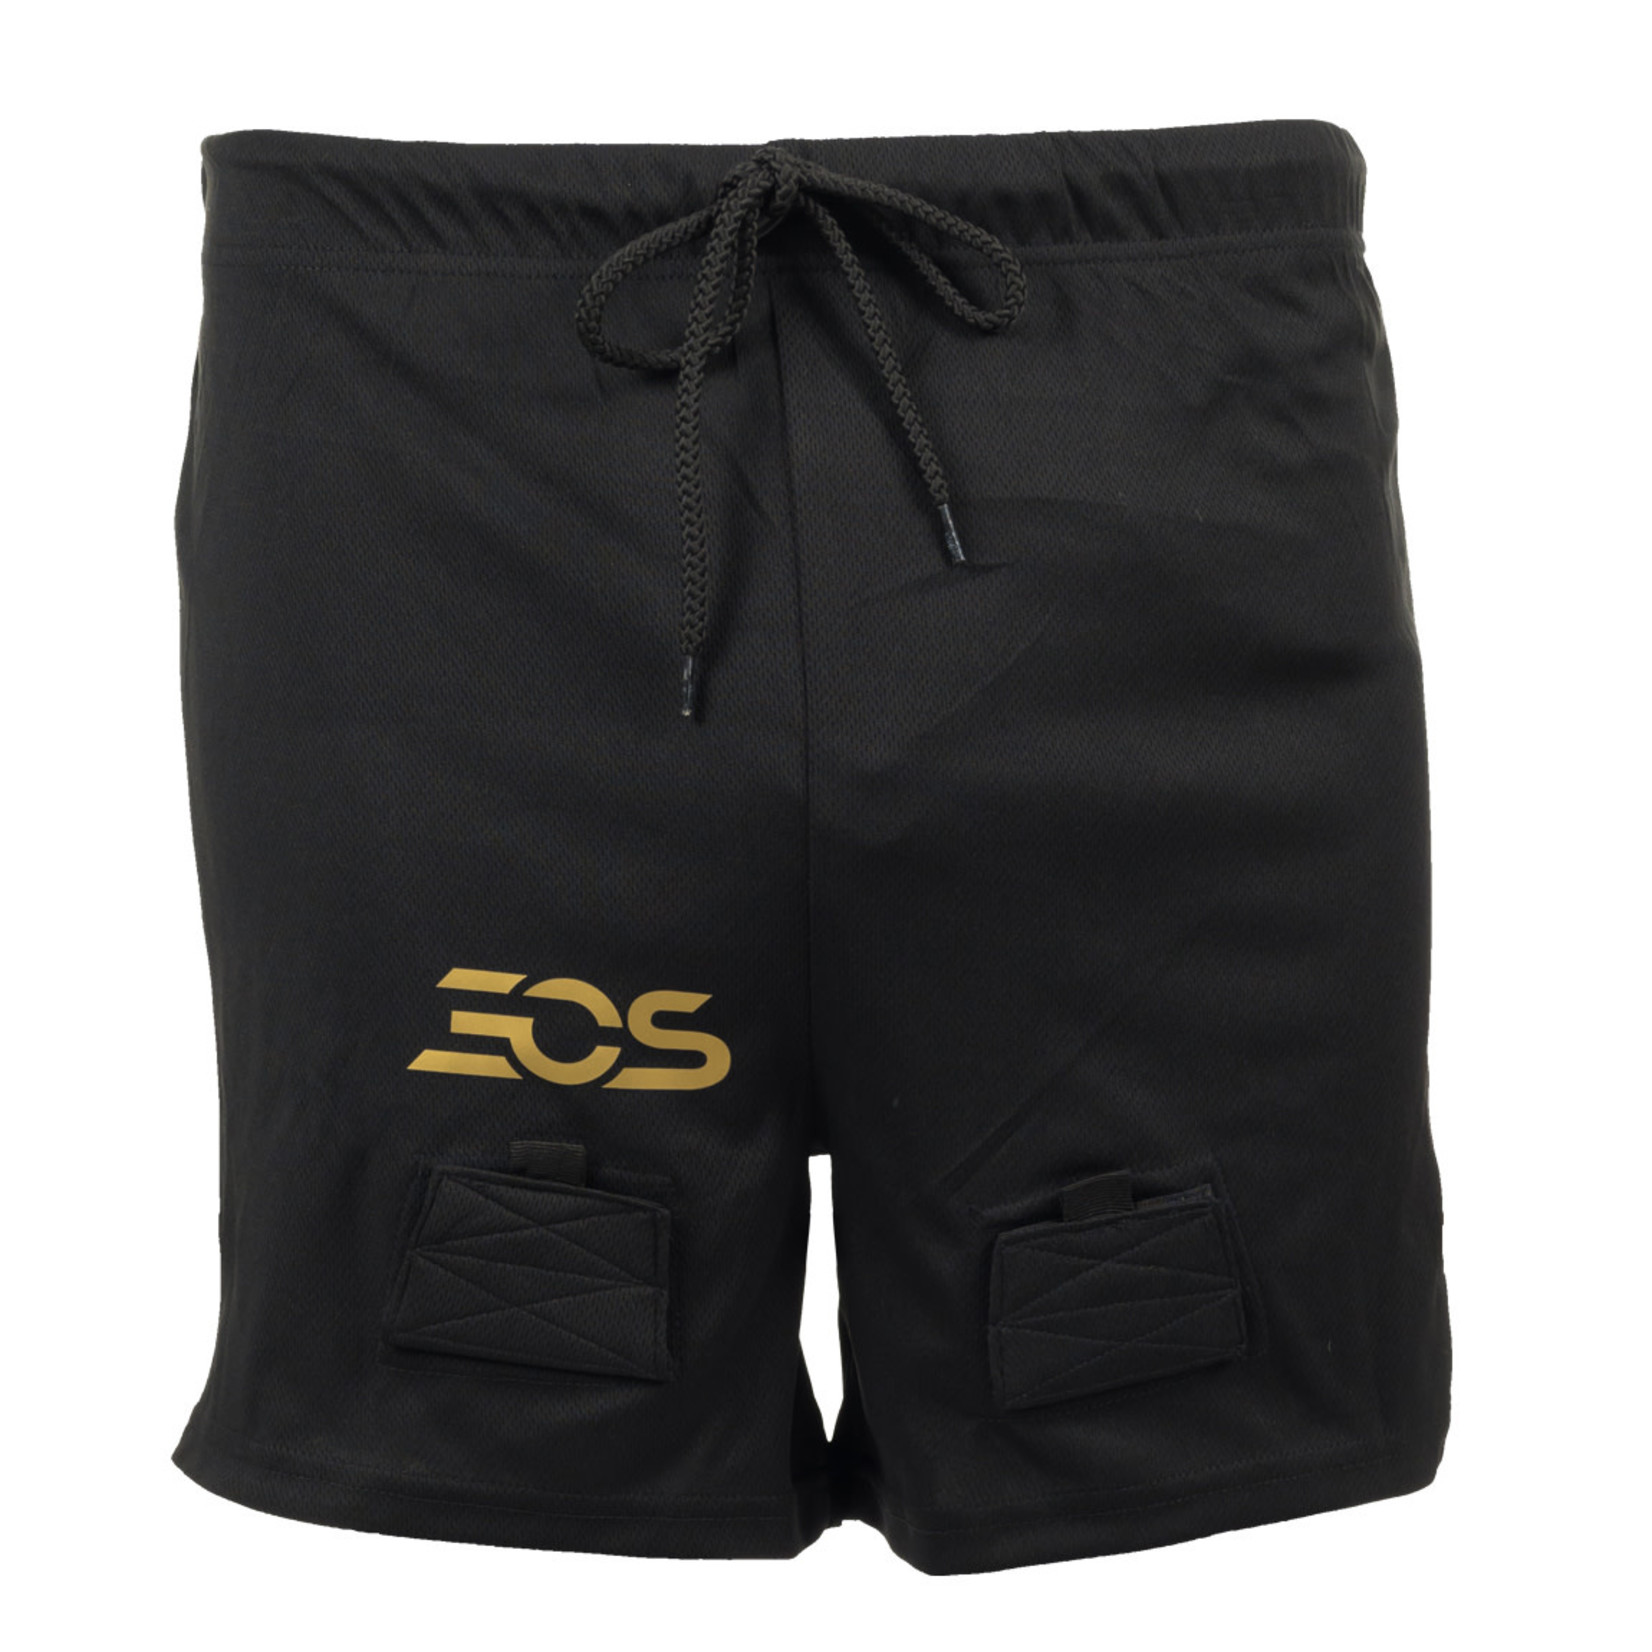 EOS Mesh Jock Shorts, TI10, Junior